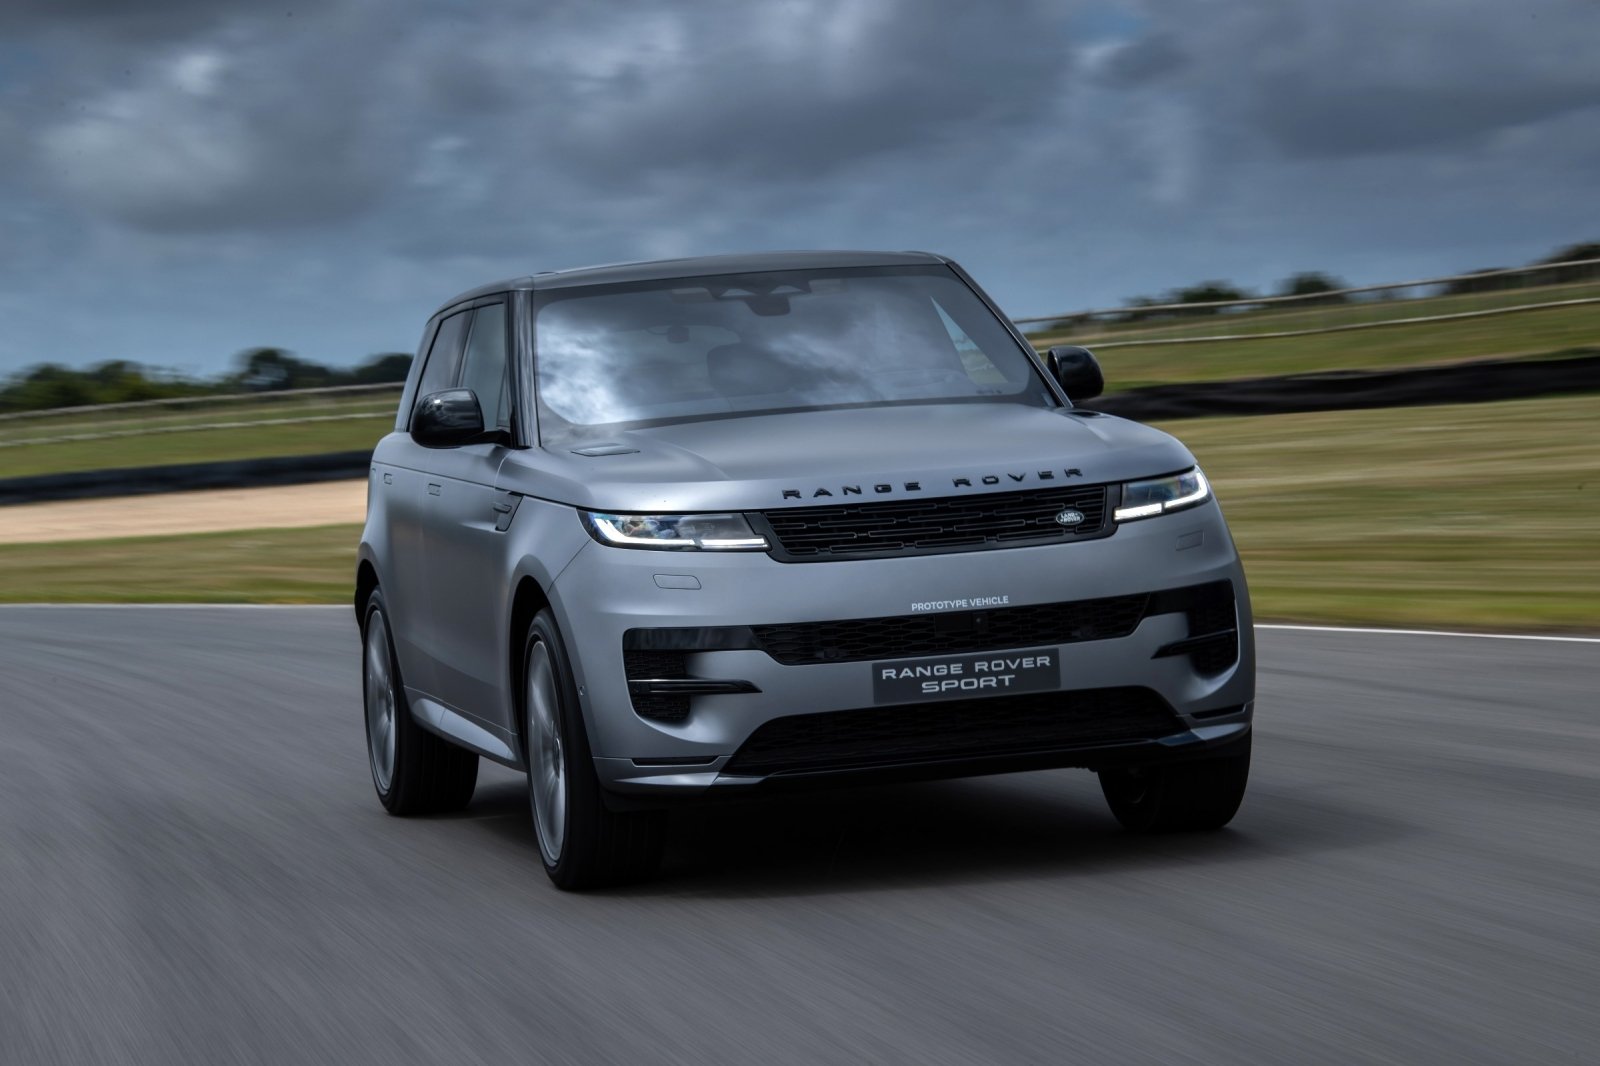 Tecnologie avanzate della nuova Range Rover Sport: cosa nasconde le ultime soluzioni del produttore?